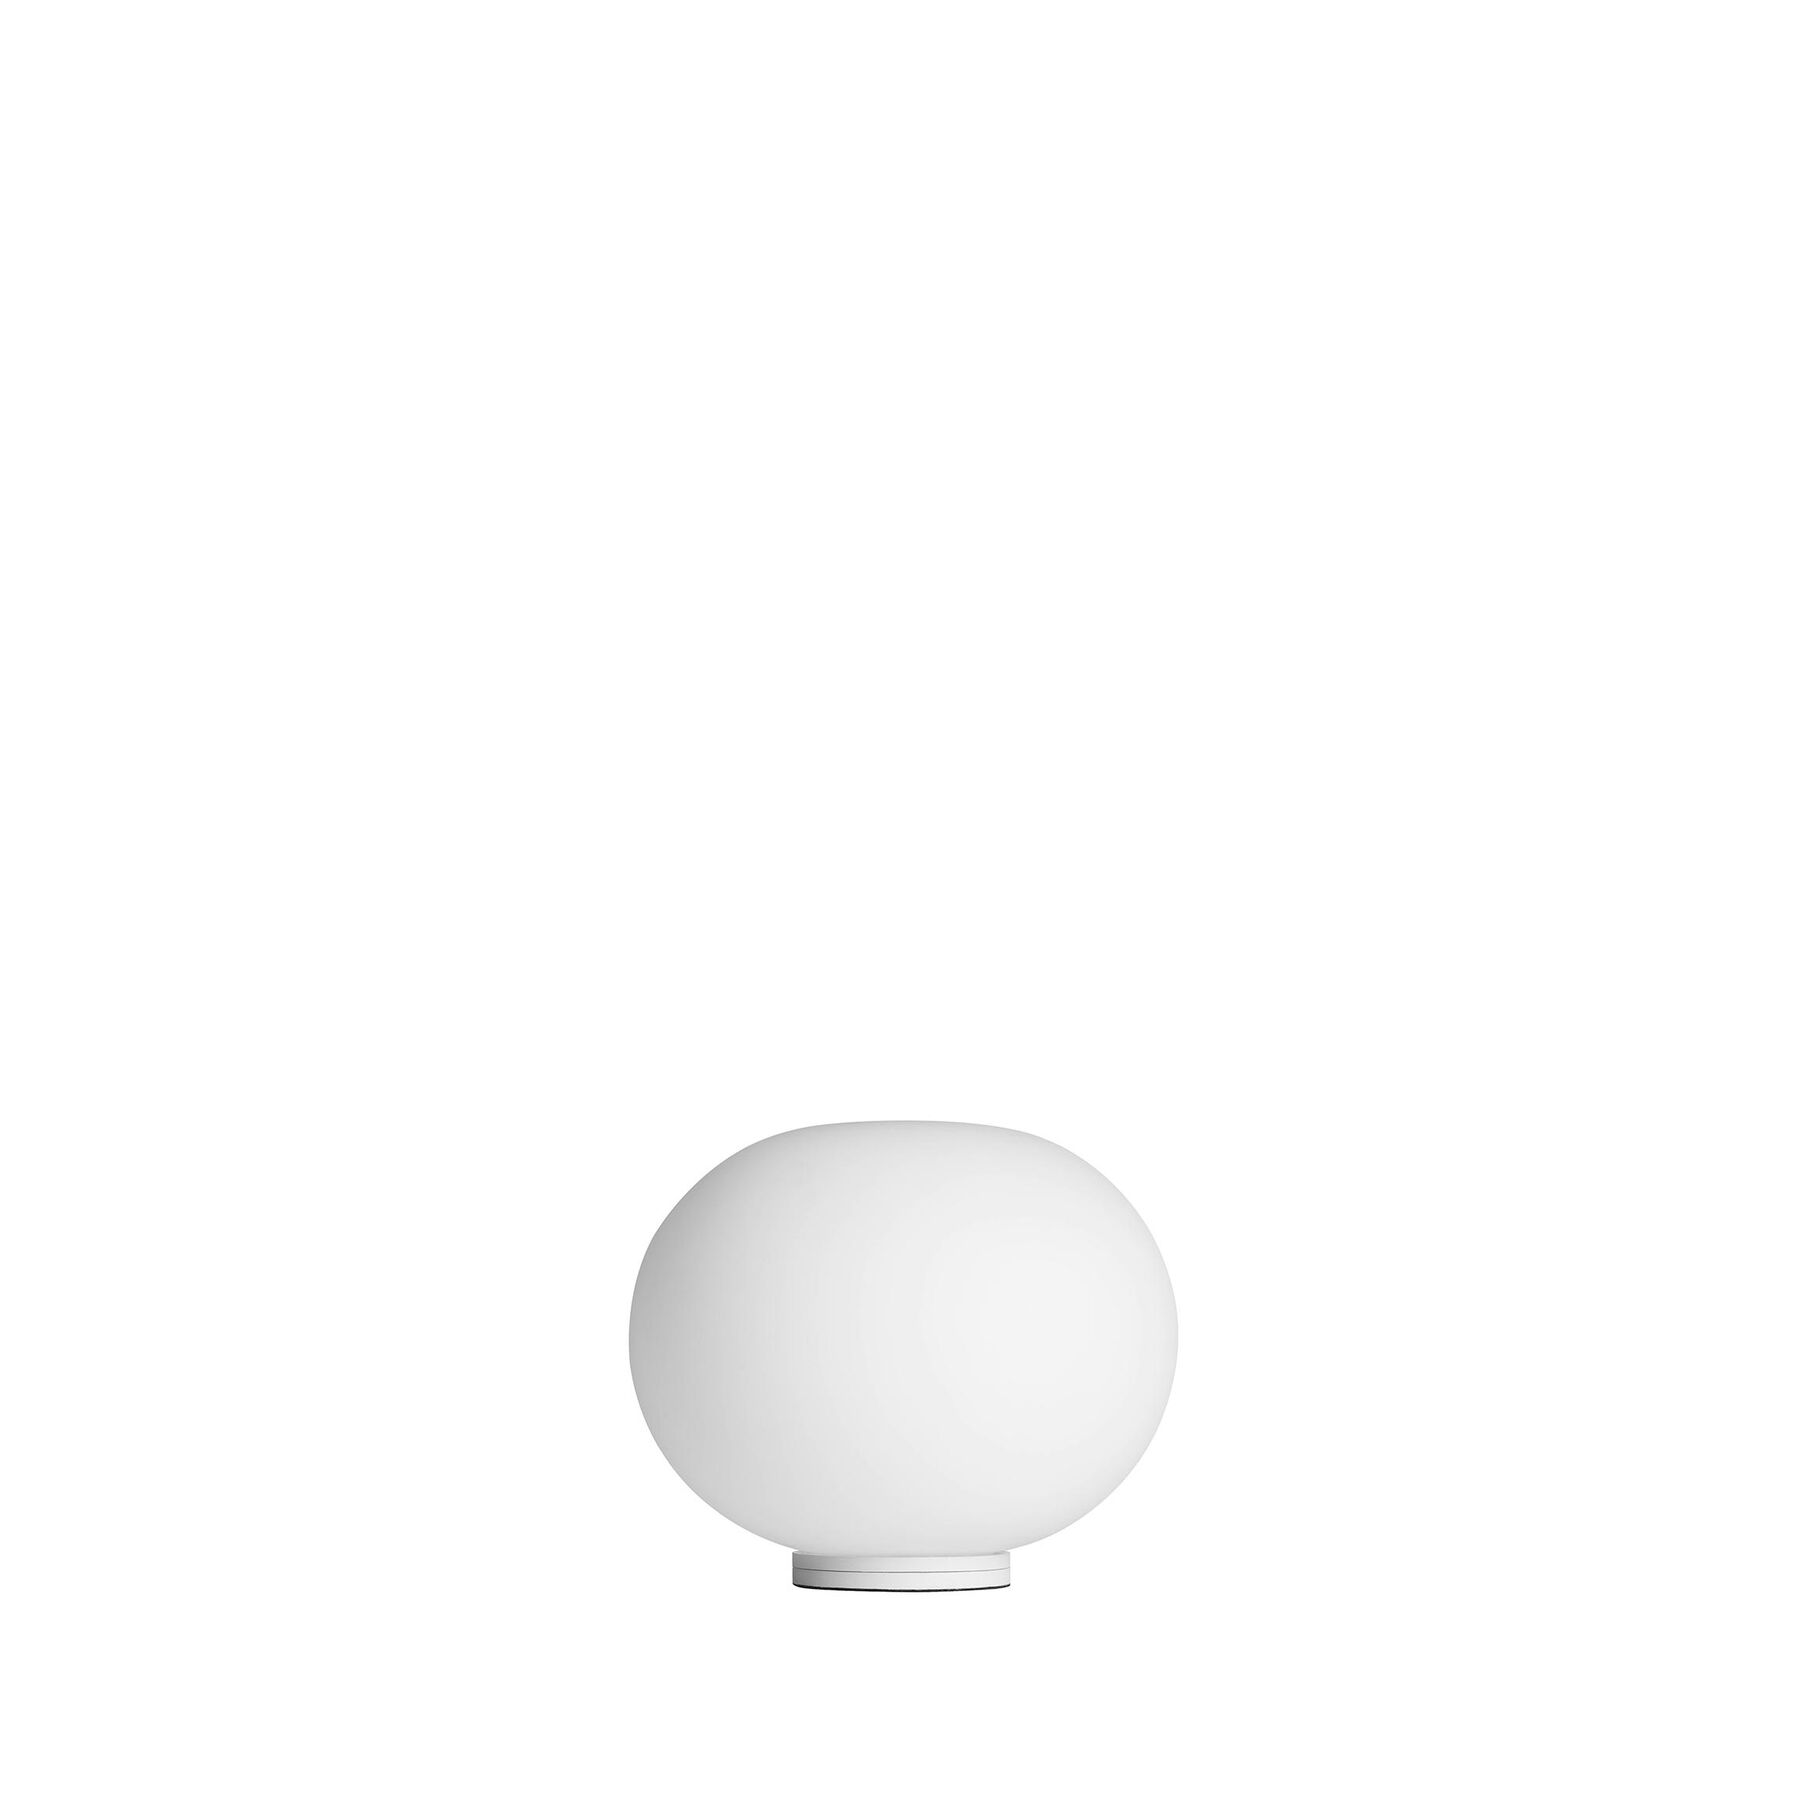 Купить Настольная лампа Glo-Ball Basic Zero Switch в интернет-магазине roooms.ru